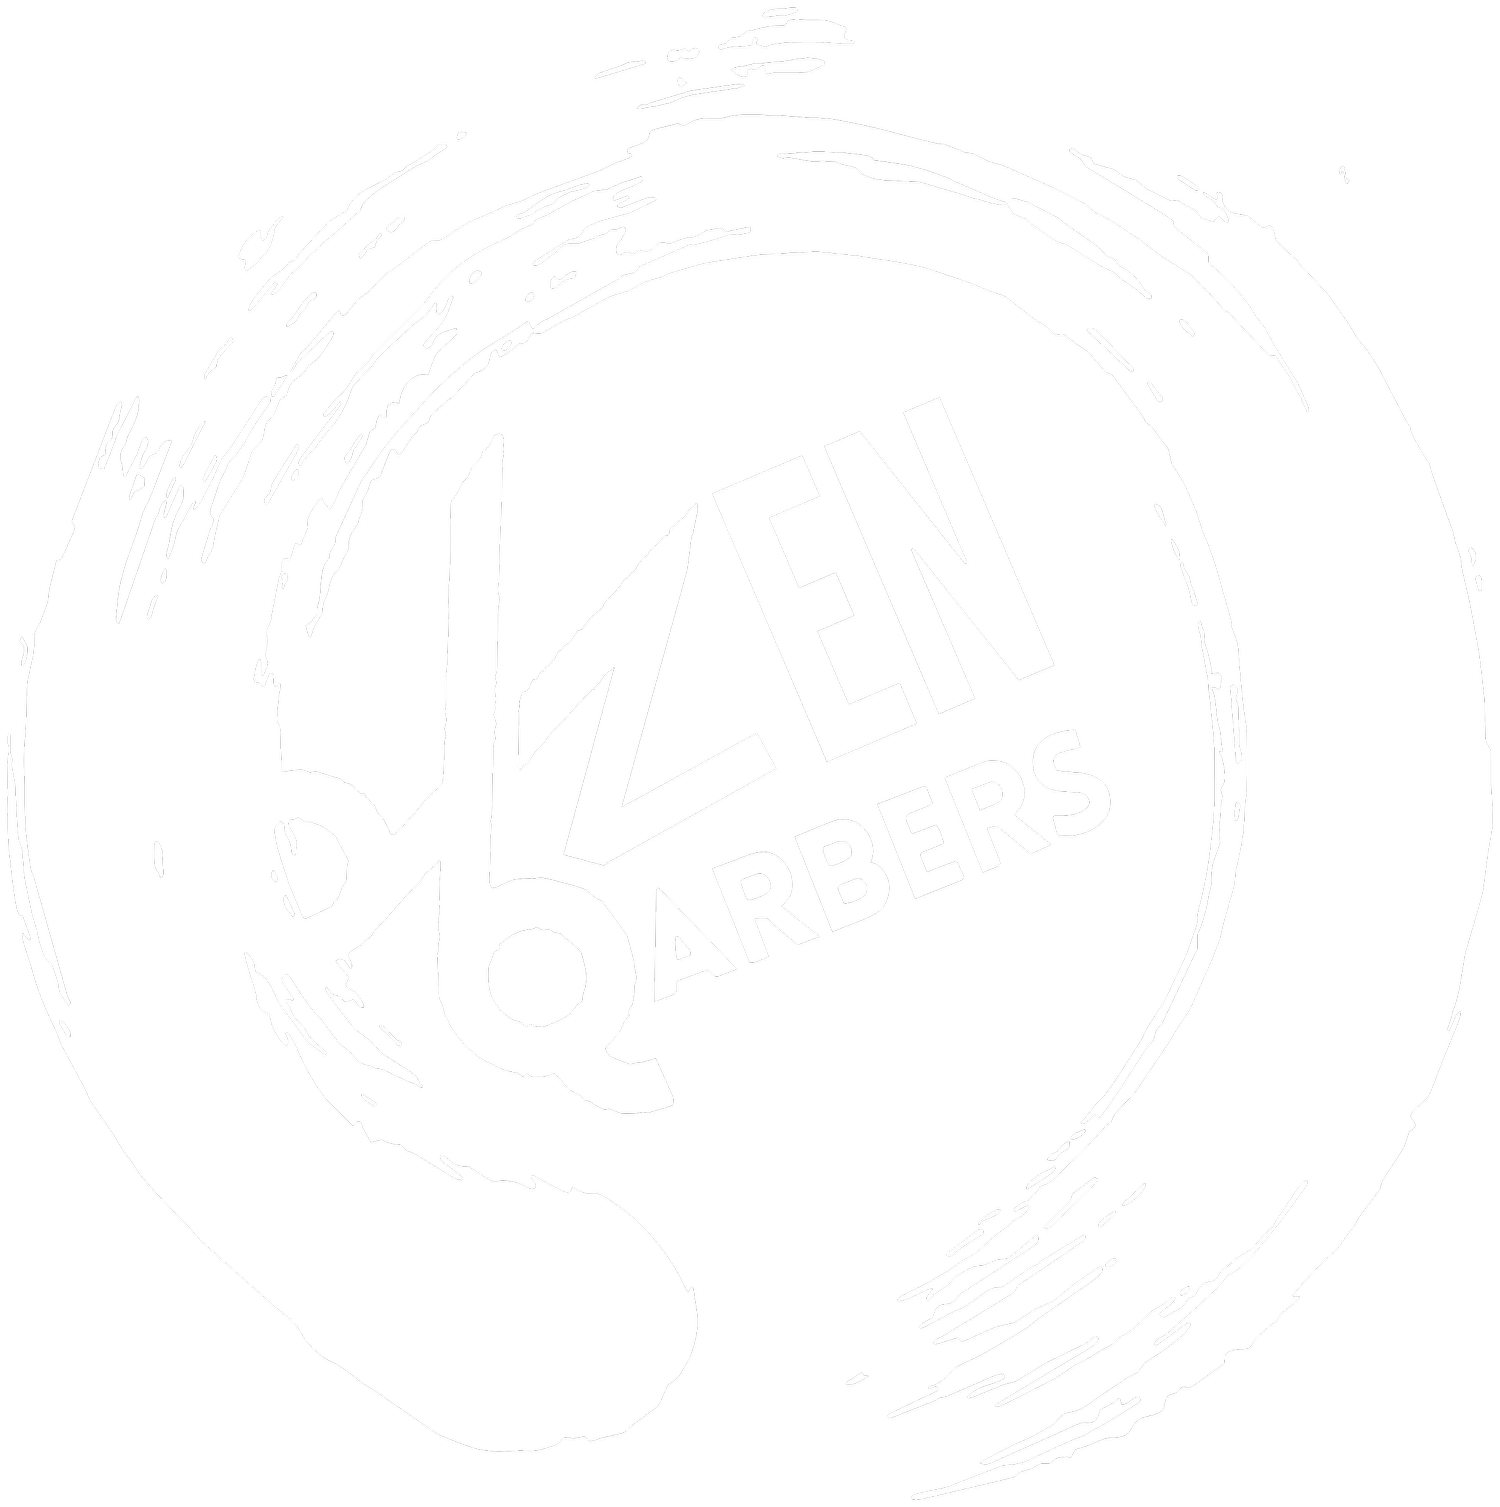 Zen Barbers 